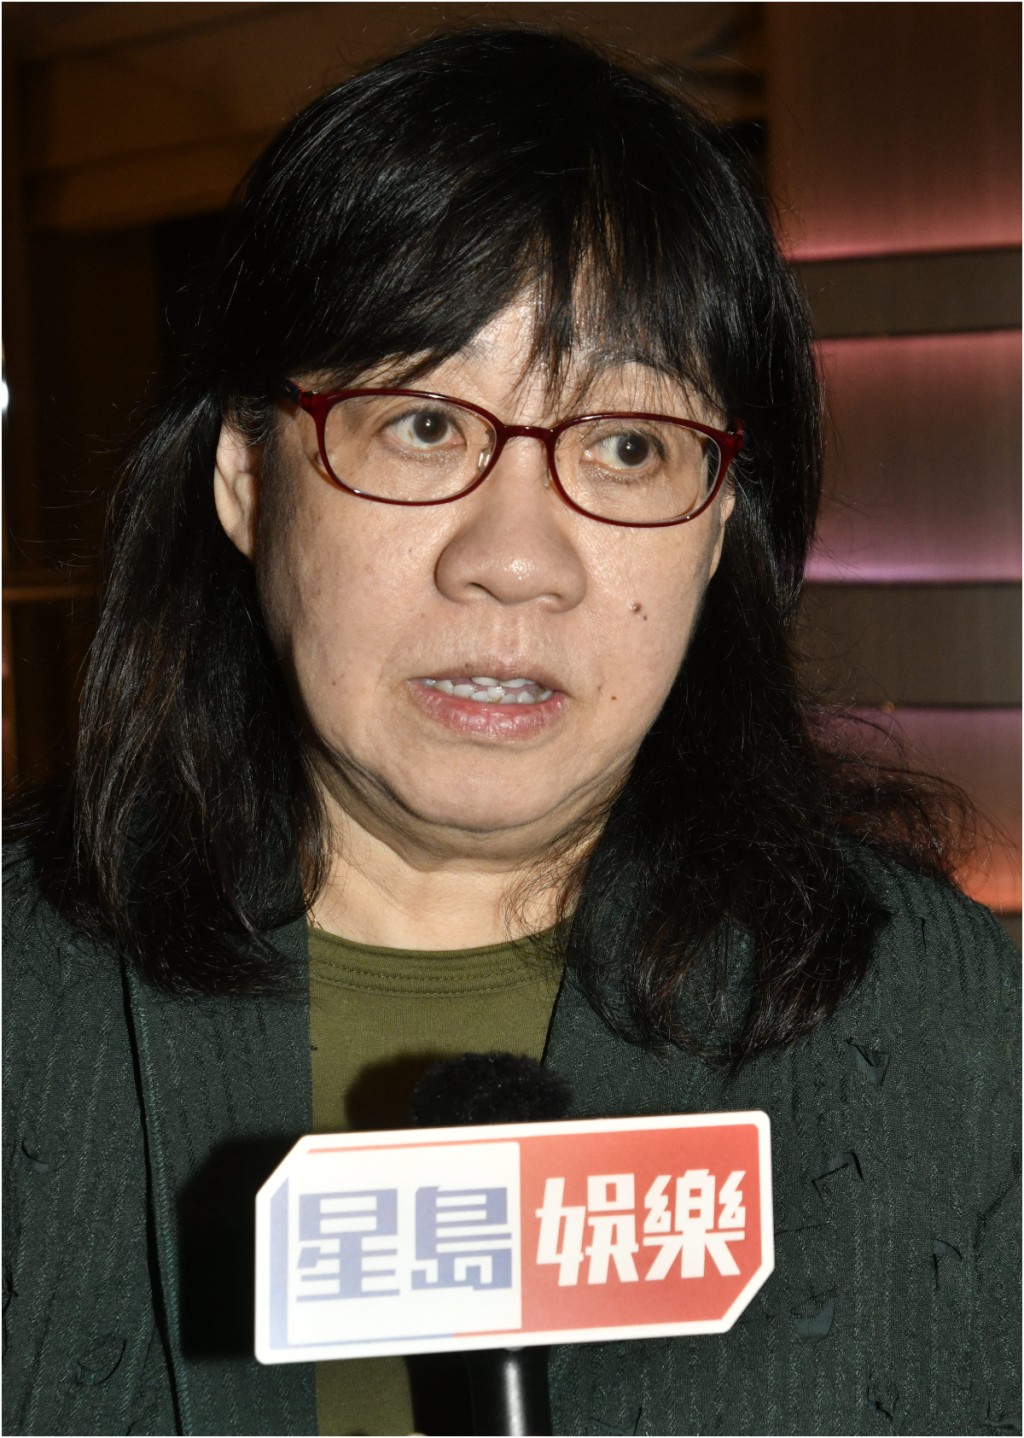 余咏珊指没有留意近日有关TVB的新闻。